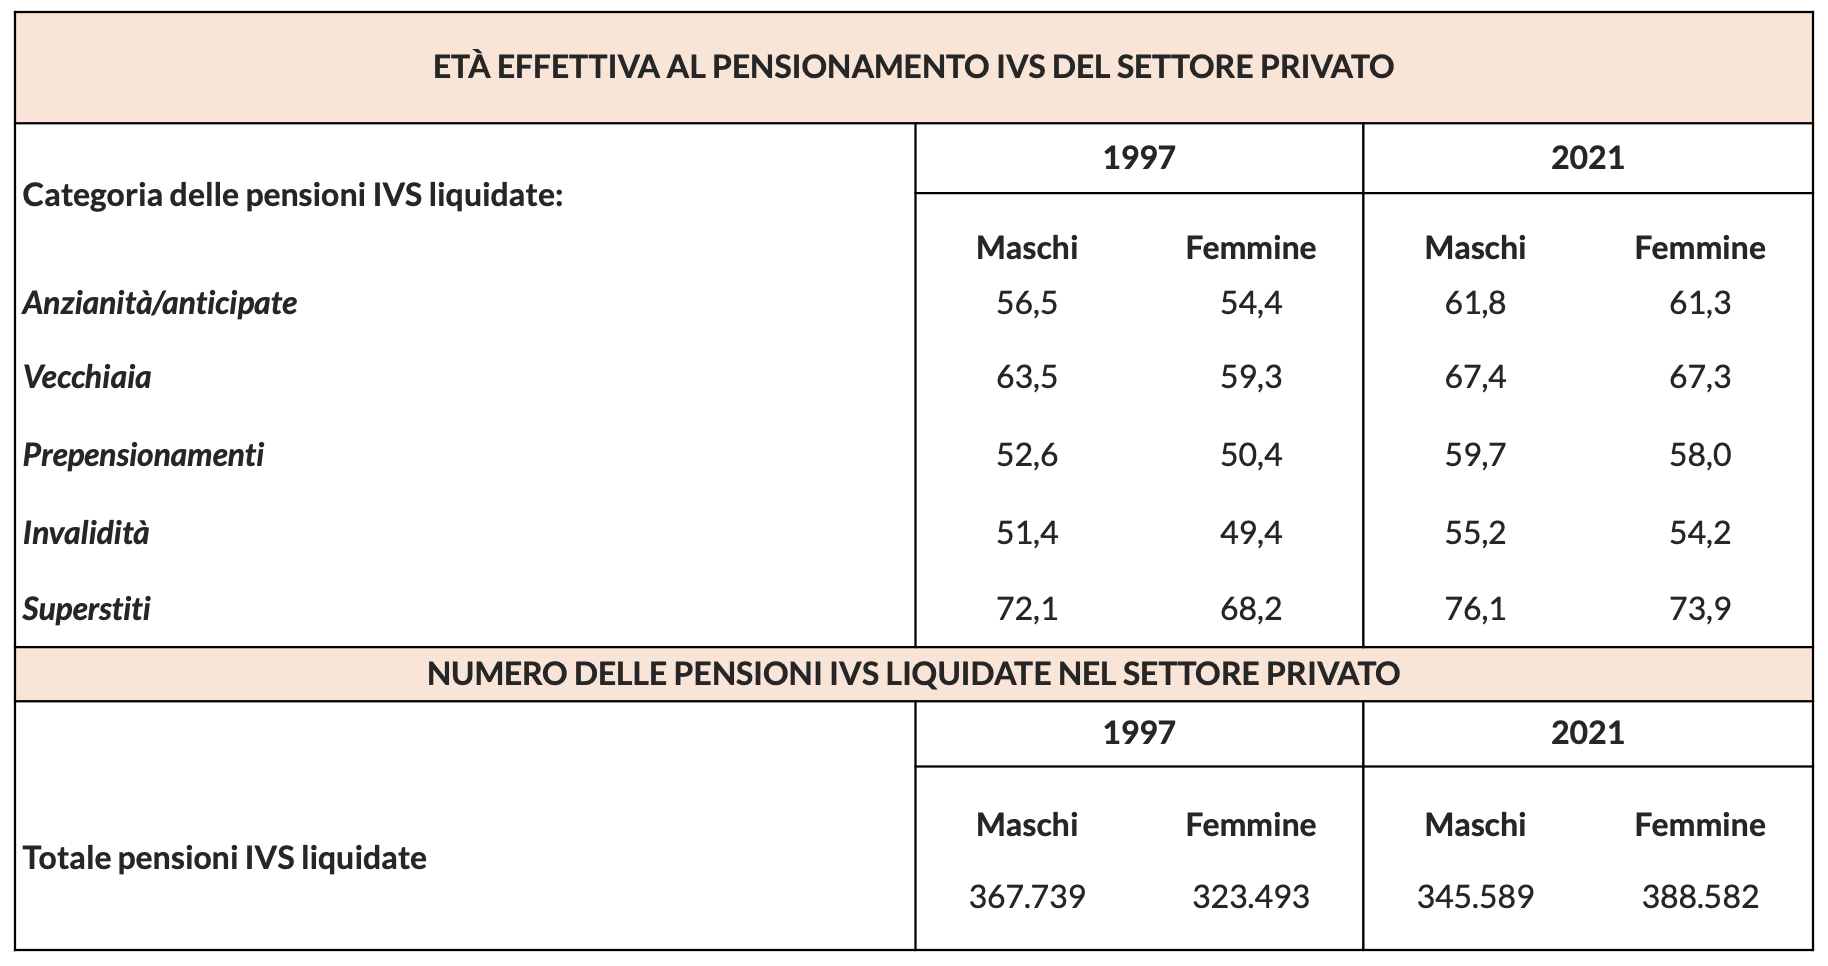 Tabella 1 – Et effettiva al pensionamento IVS e numero di pensioni IVS liquidate nel settore privato